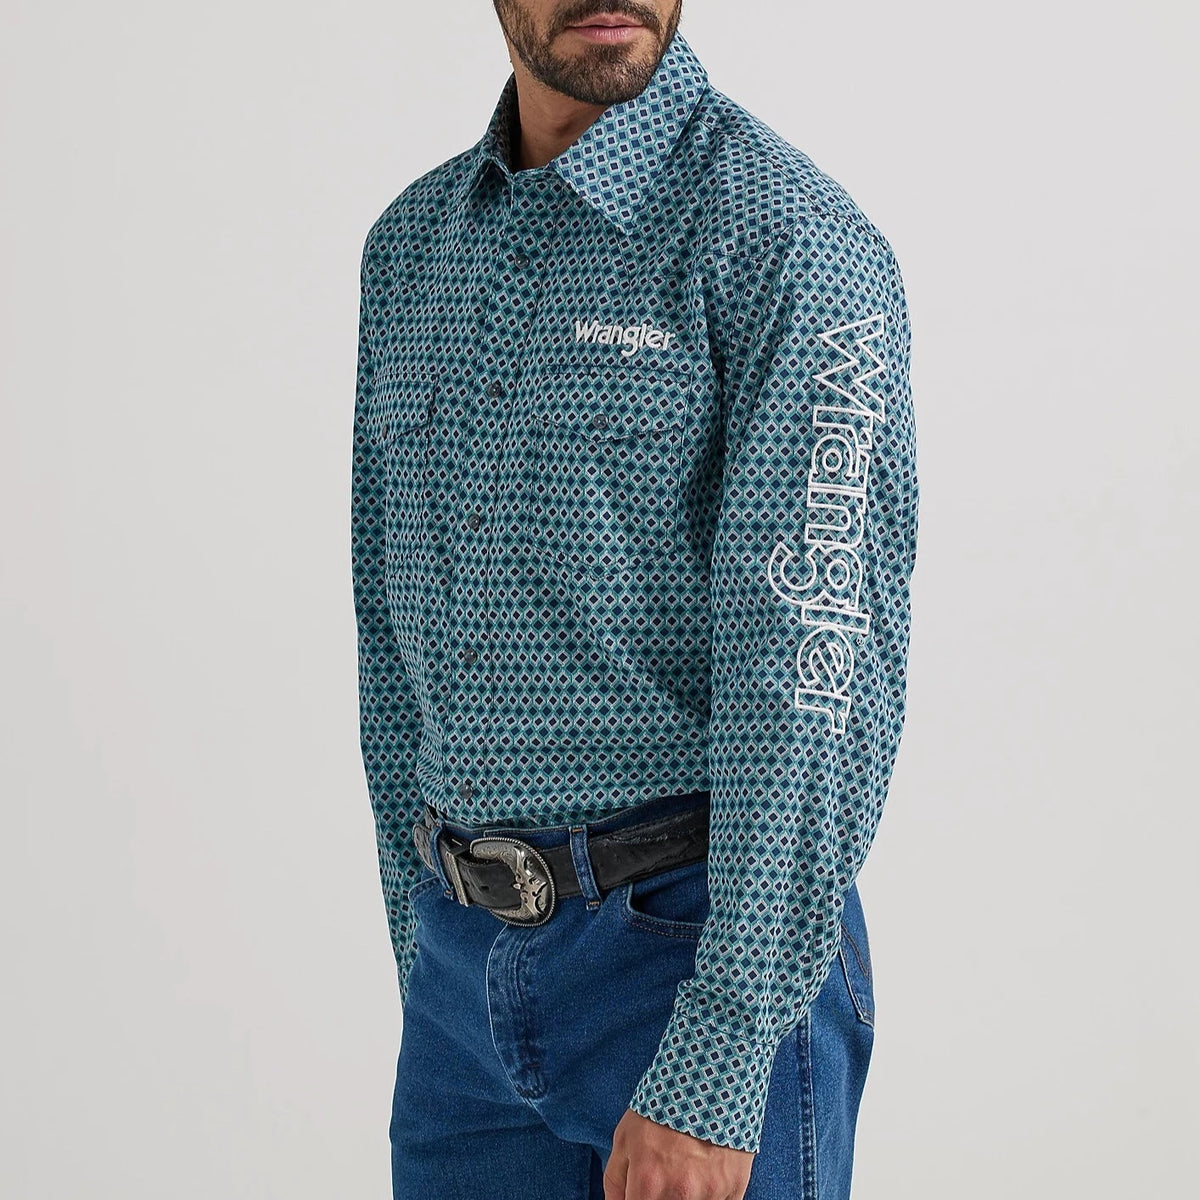 Wrangler Men's Logo Long Sleeve Western Snap Shirt in Blue Diamond